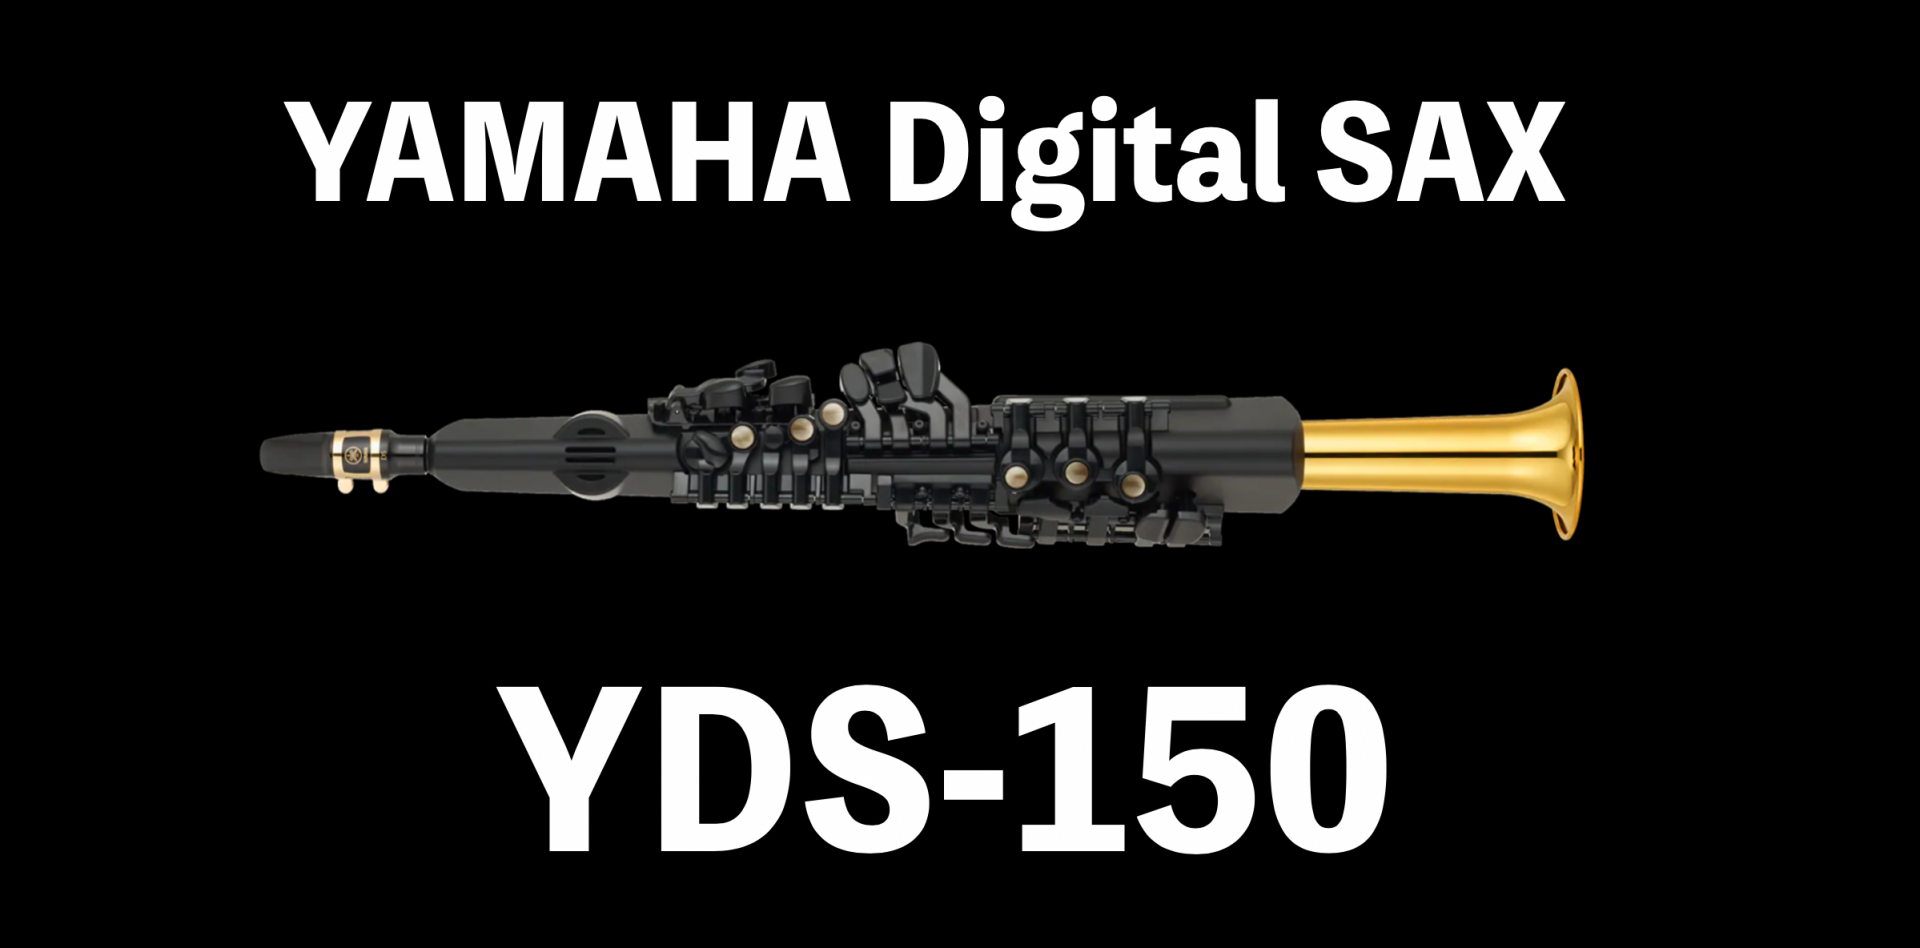 【新商品】YAMAHAデジタルサックスYDS-150が日本上陸！予約受付中！